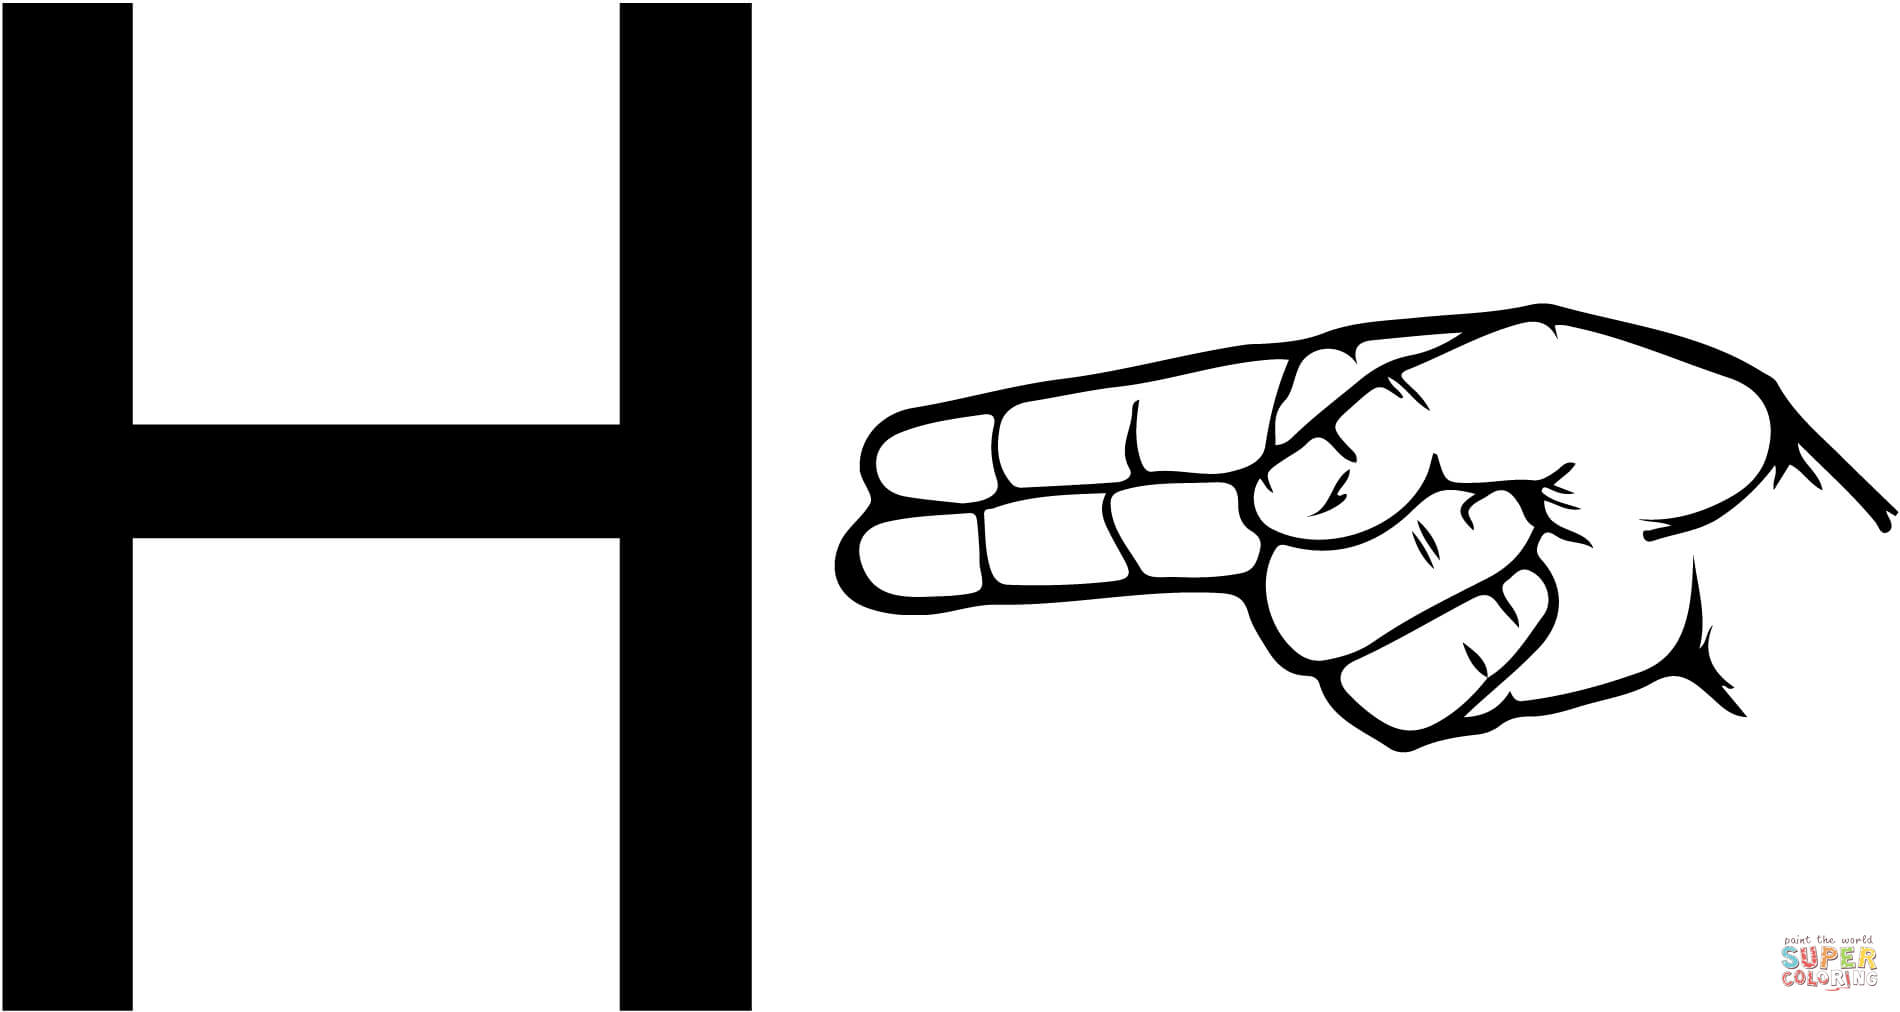 Lettre H en langue des signes ASL à partir de la lettre H